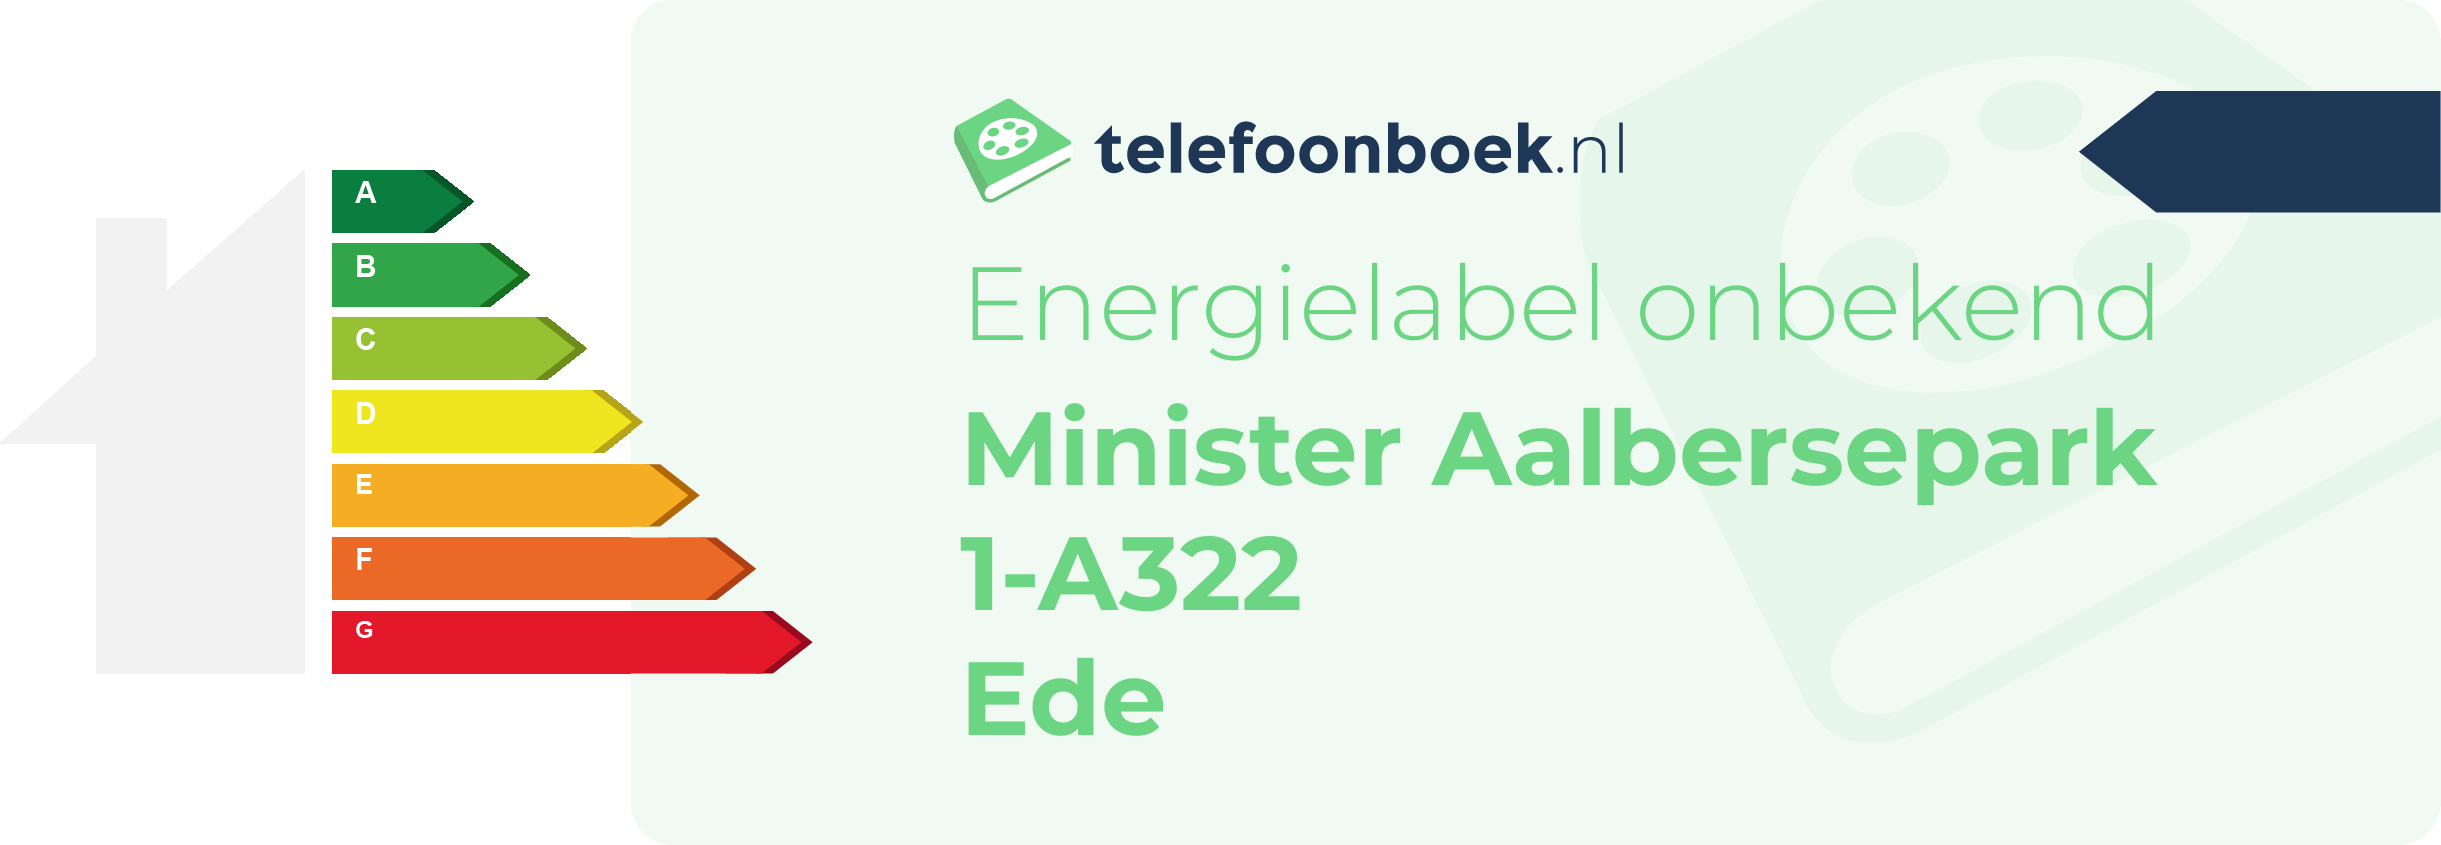 Energielabel Minister Aalbersepark 1-A322 Ede